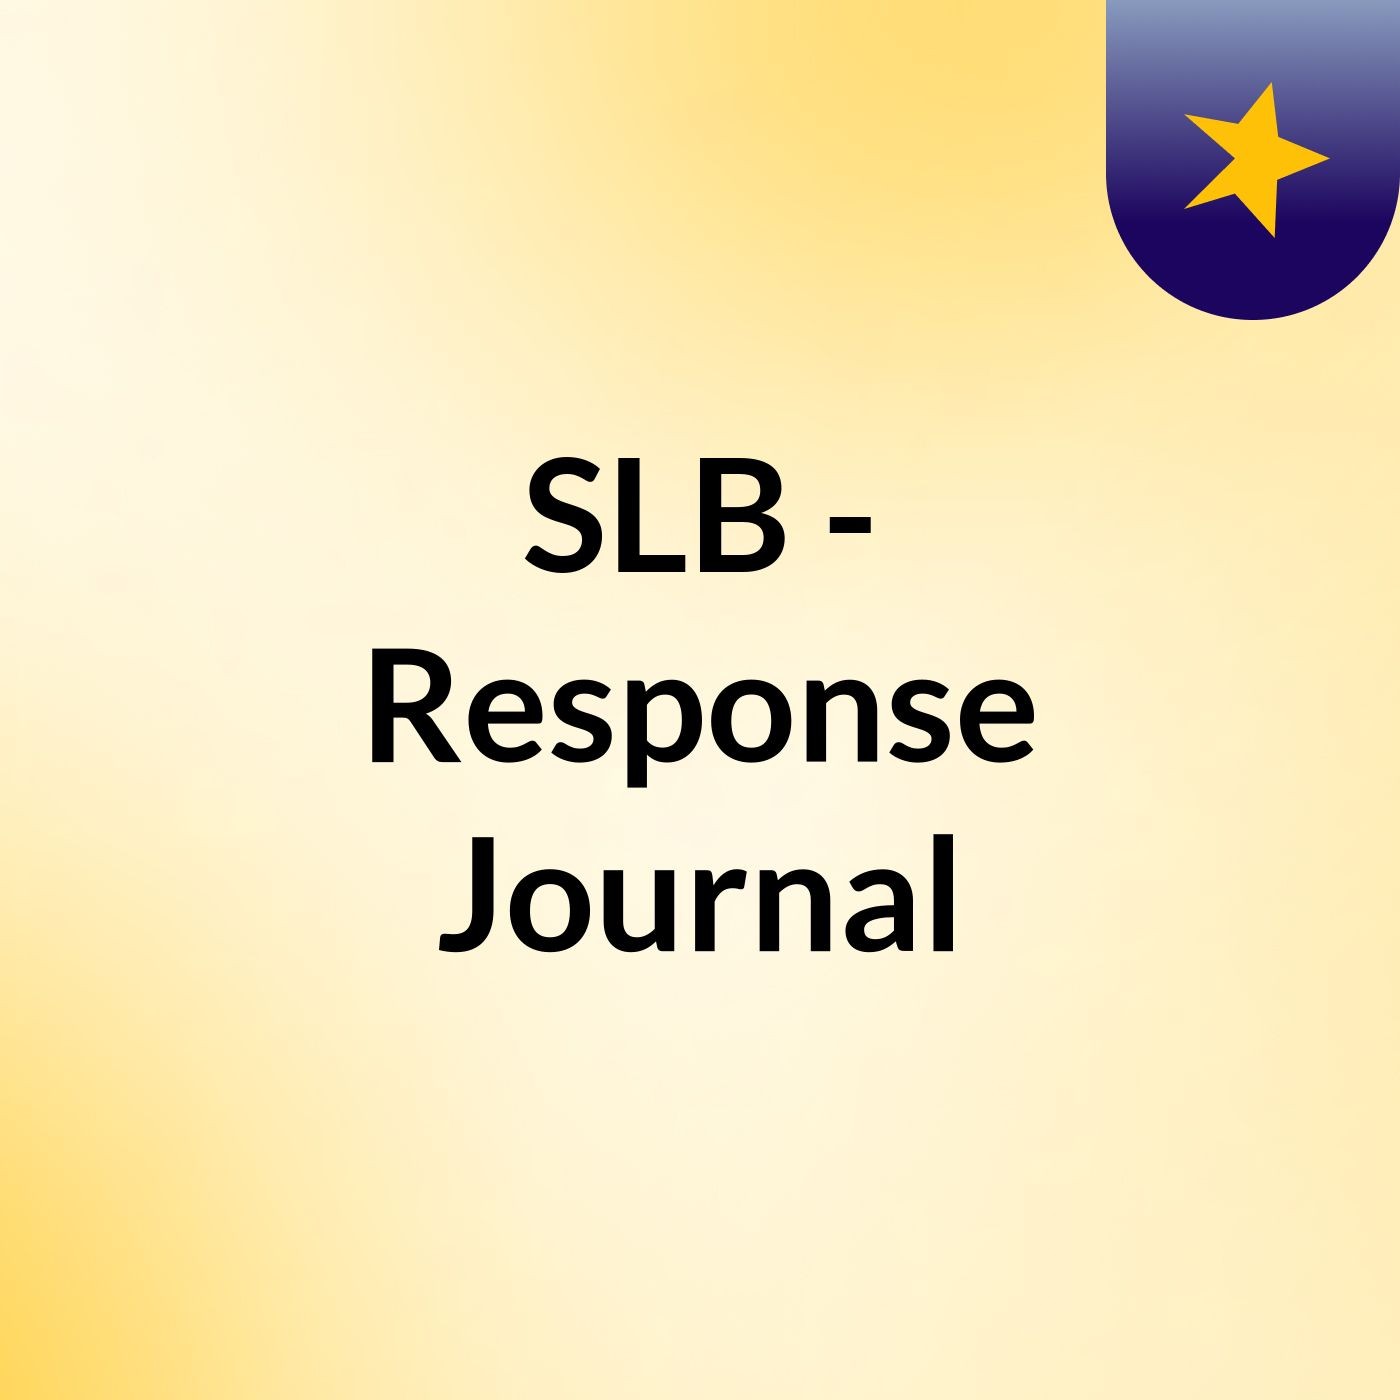 Episode 5 - SLB - Response Journal